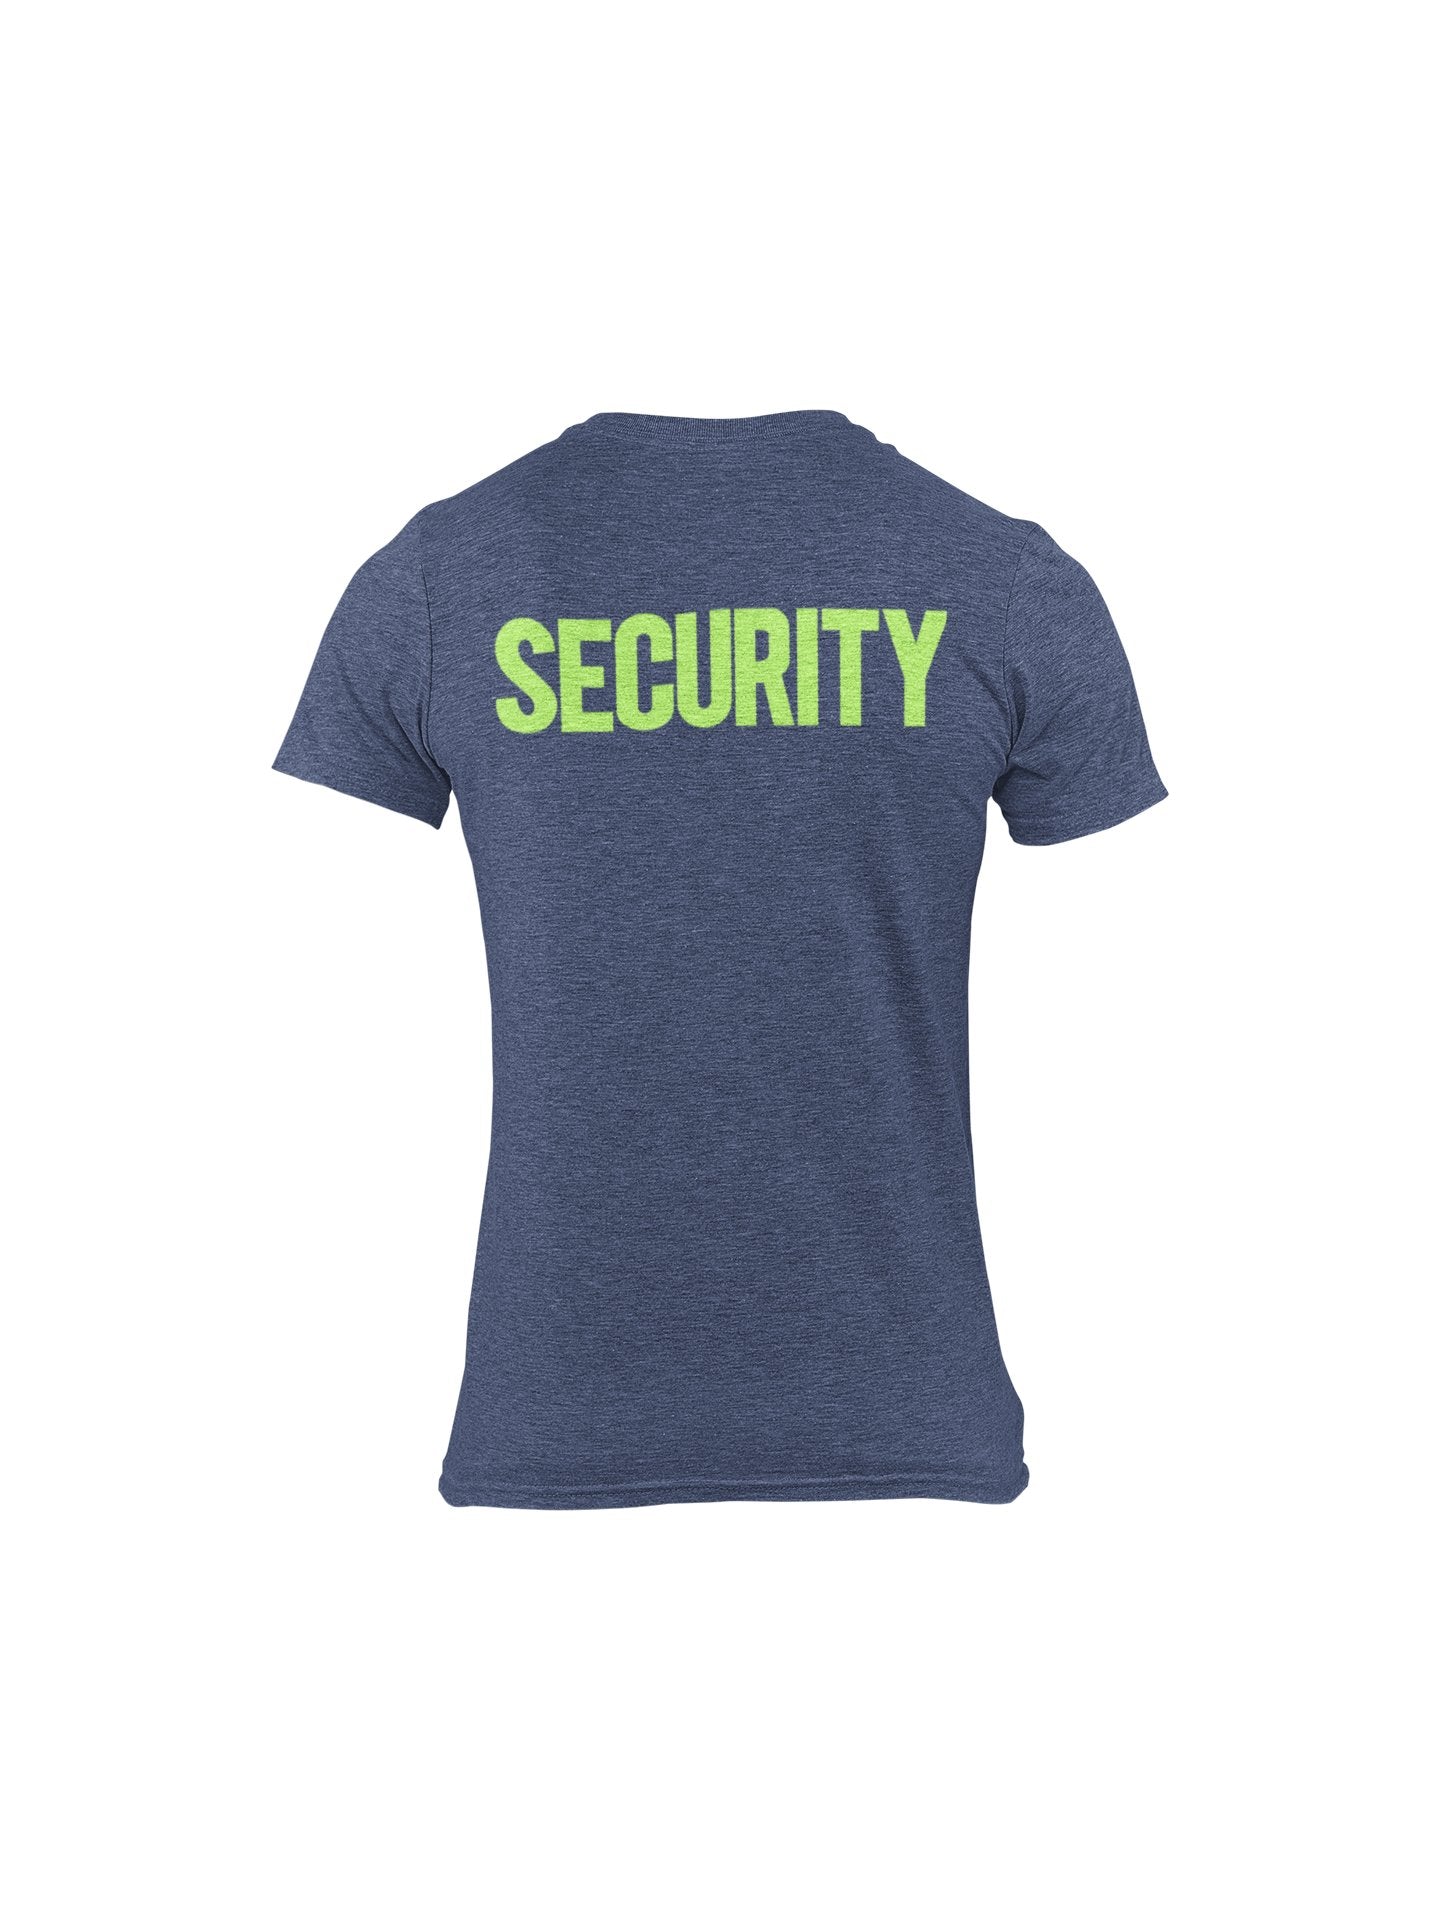 T-shirt de sécurité pour hommes (conception solide, imprimé avant et arrière, bleu marine chiné et néon)